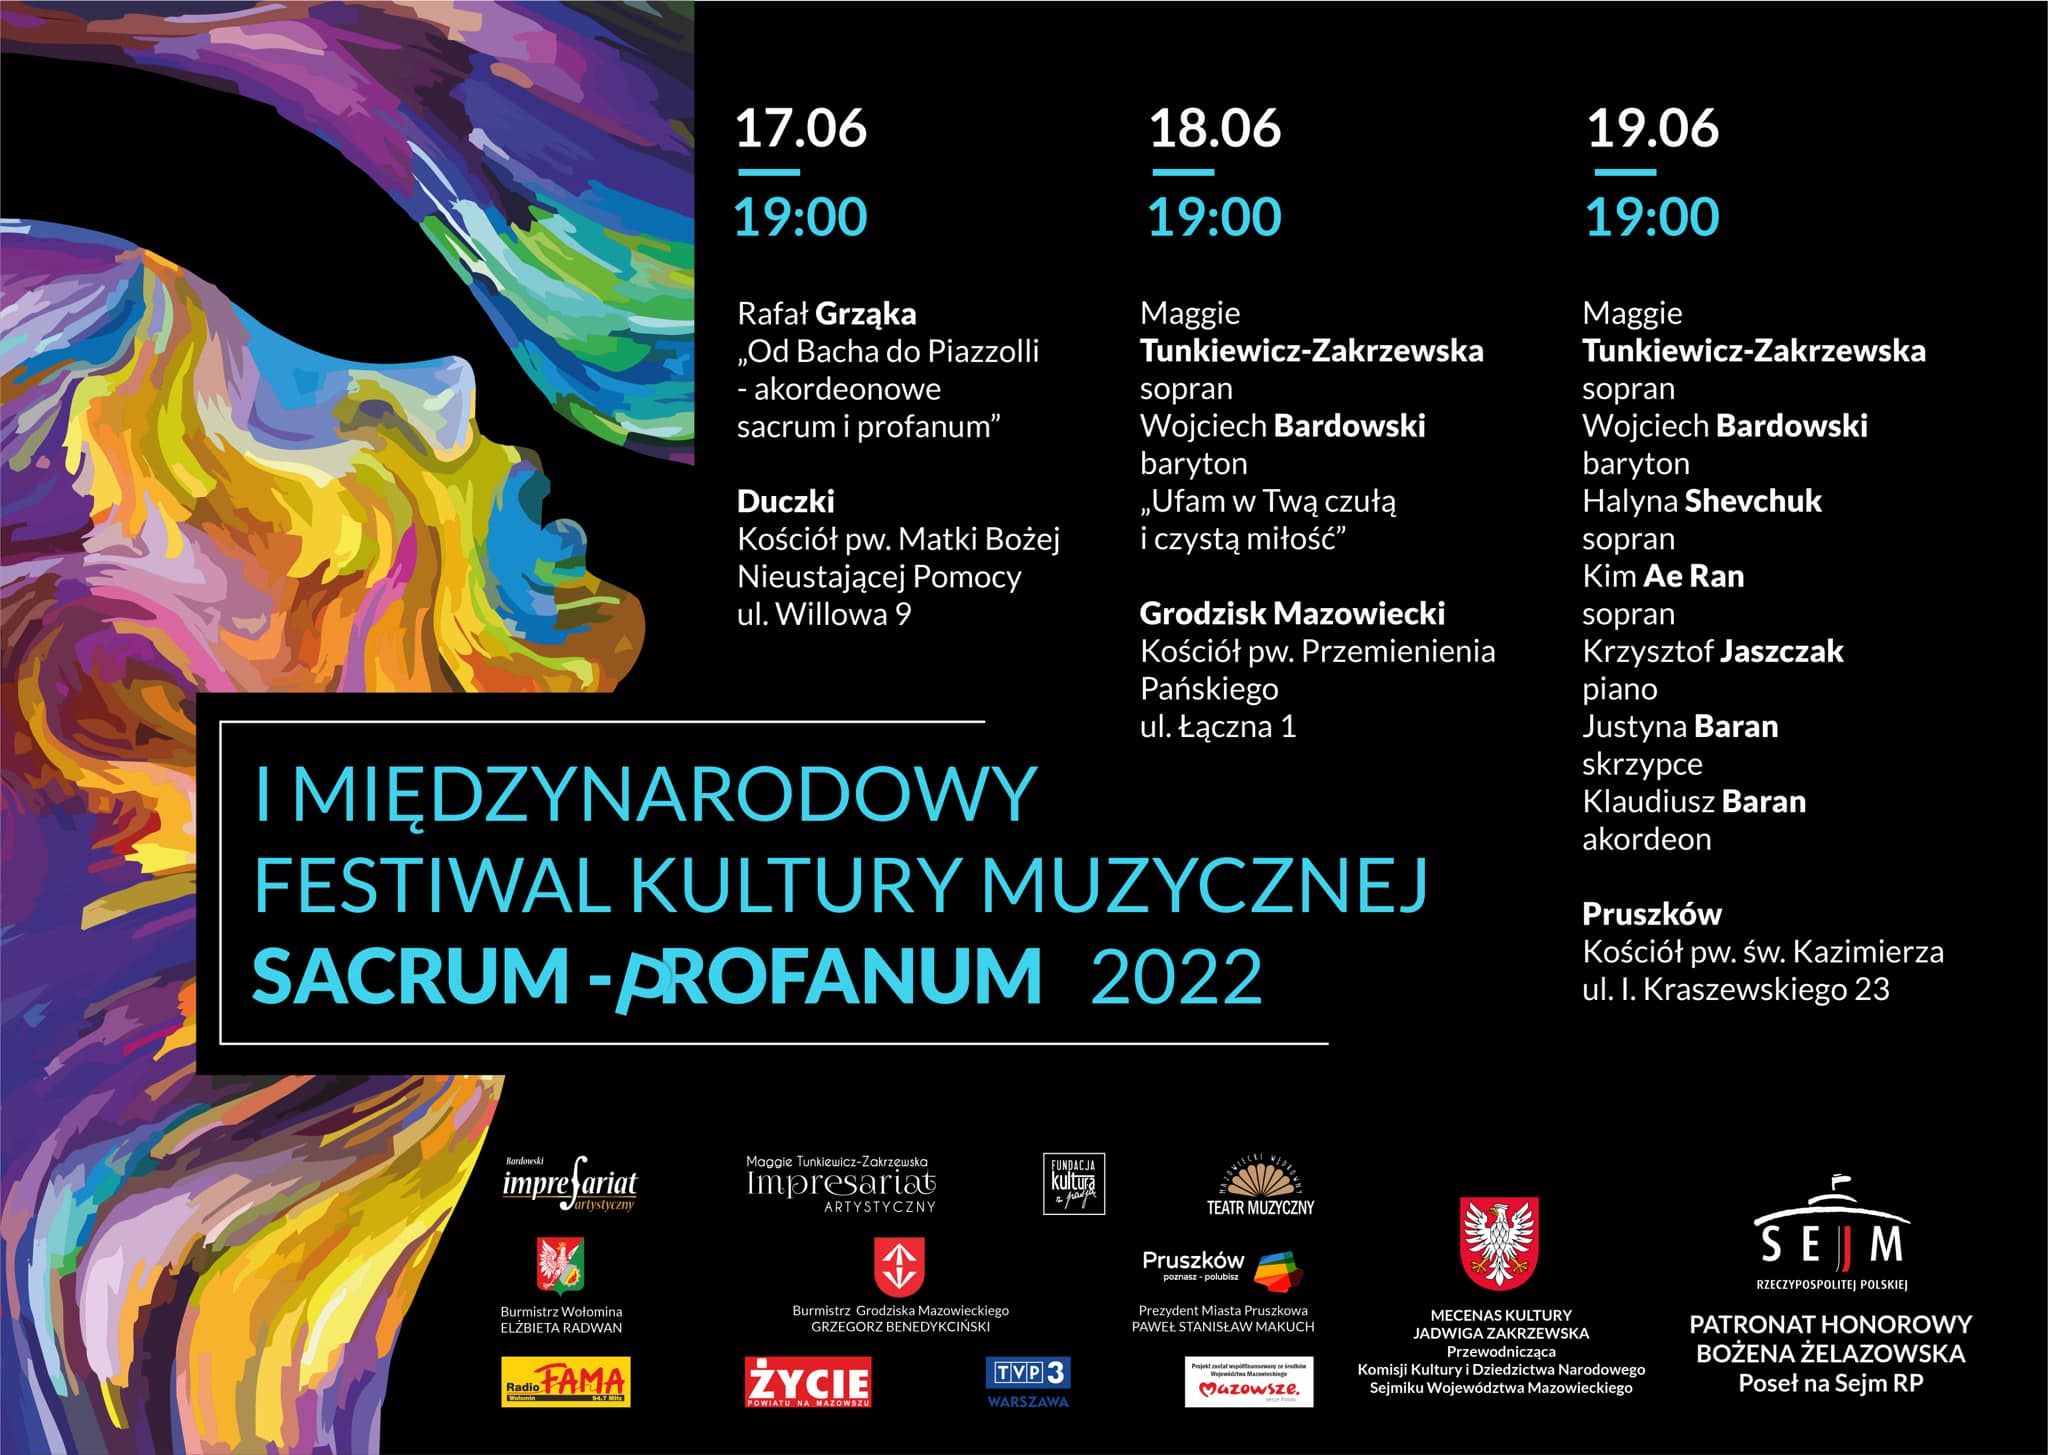 I Międzynarodowy Festiwal Kultury Muzycznej Sacrum - Profanum 2022